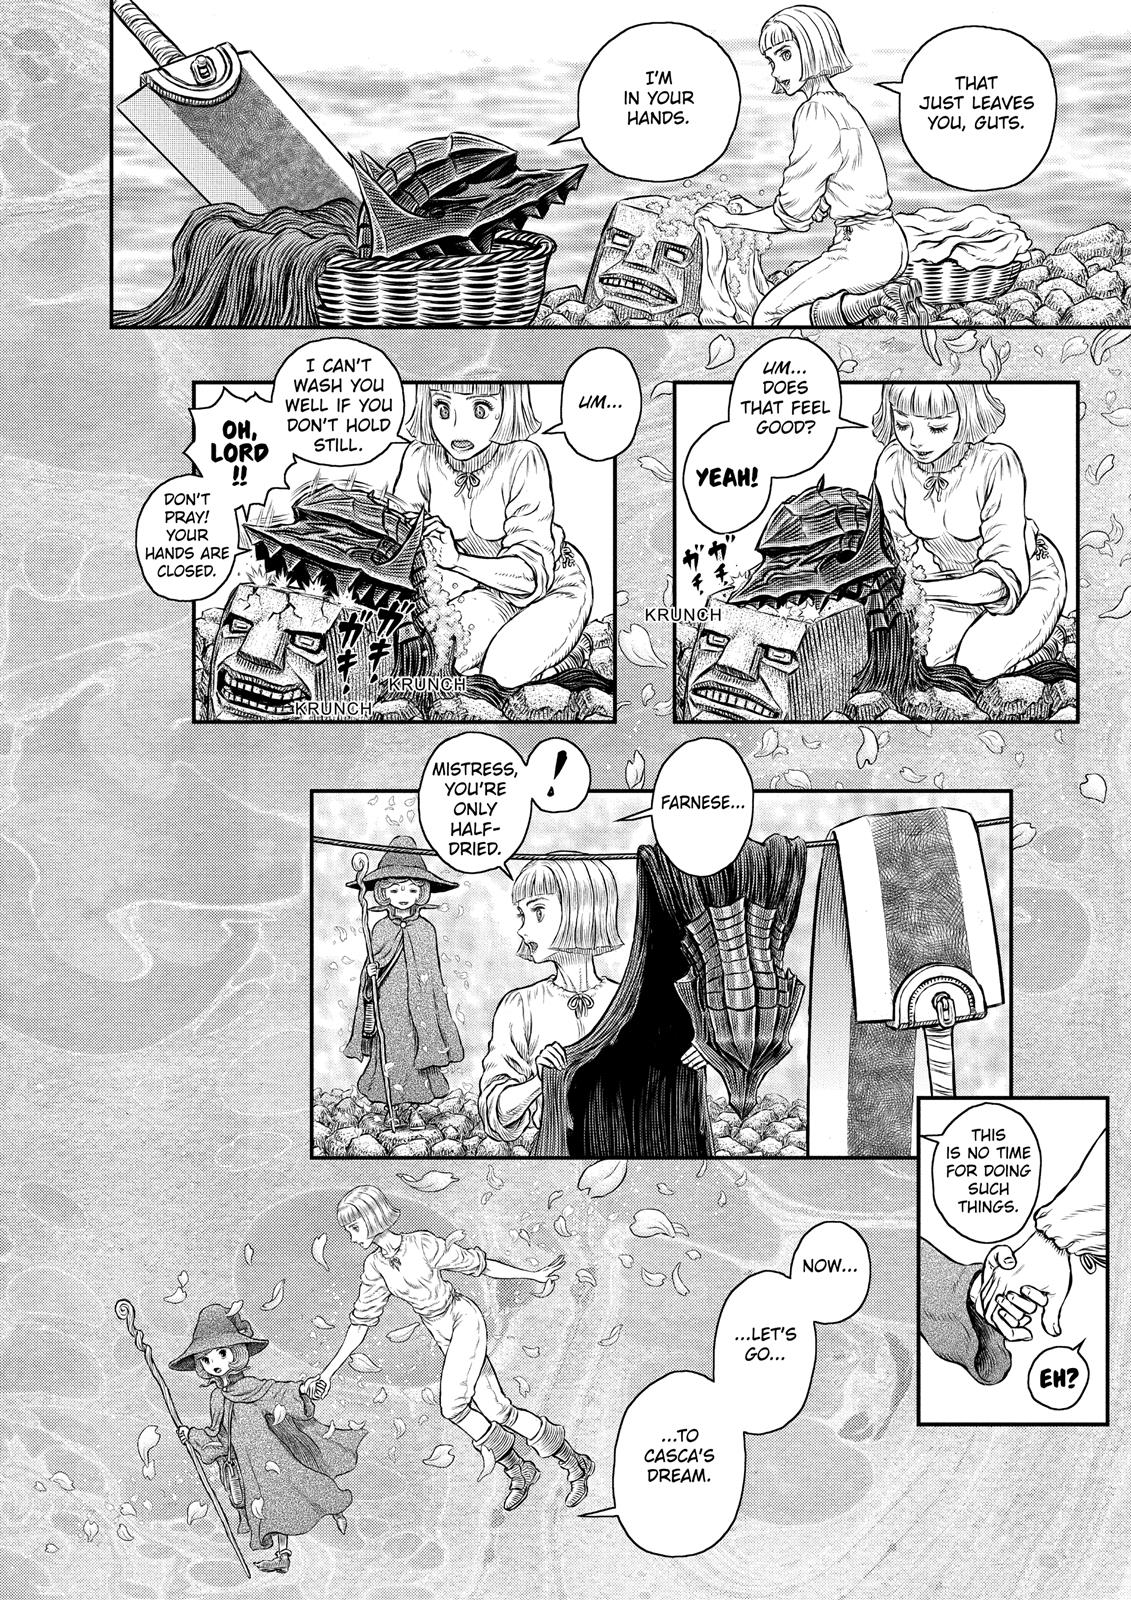 Berserk Manga Chapter 347 image 18